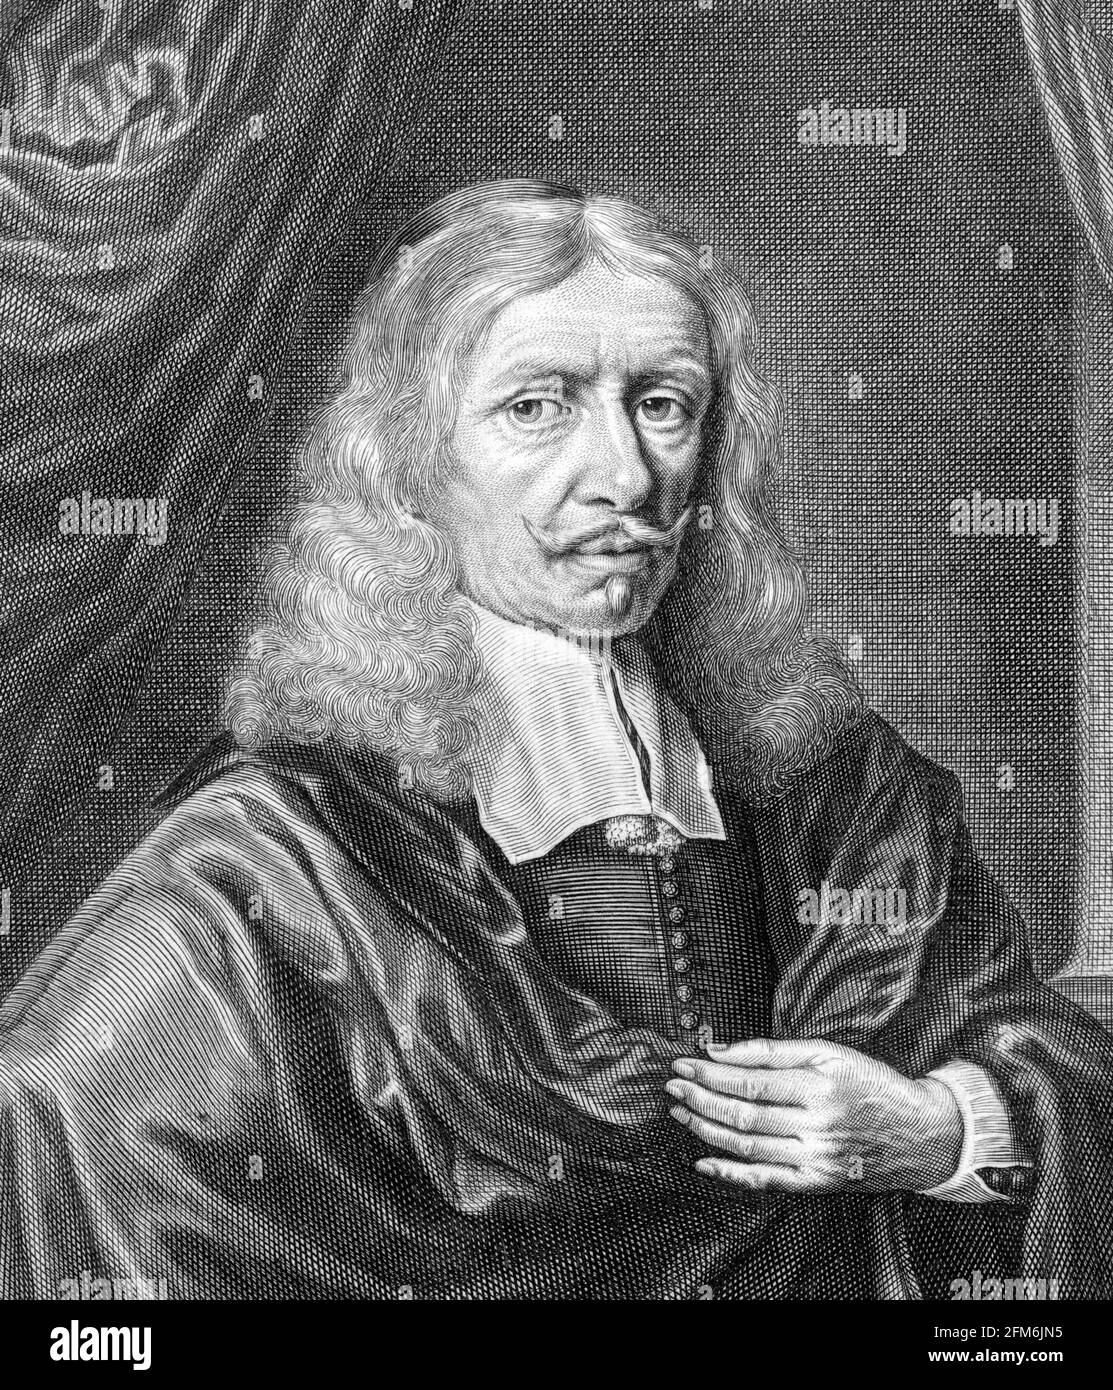 Johannes Hevelius. Portrait de l'astronome polonais Johannes Hevelius (1611-1687), gravure de Lambert Visscher, c. 1643-1691 Banque D'Images